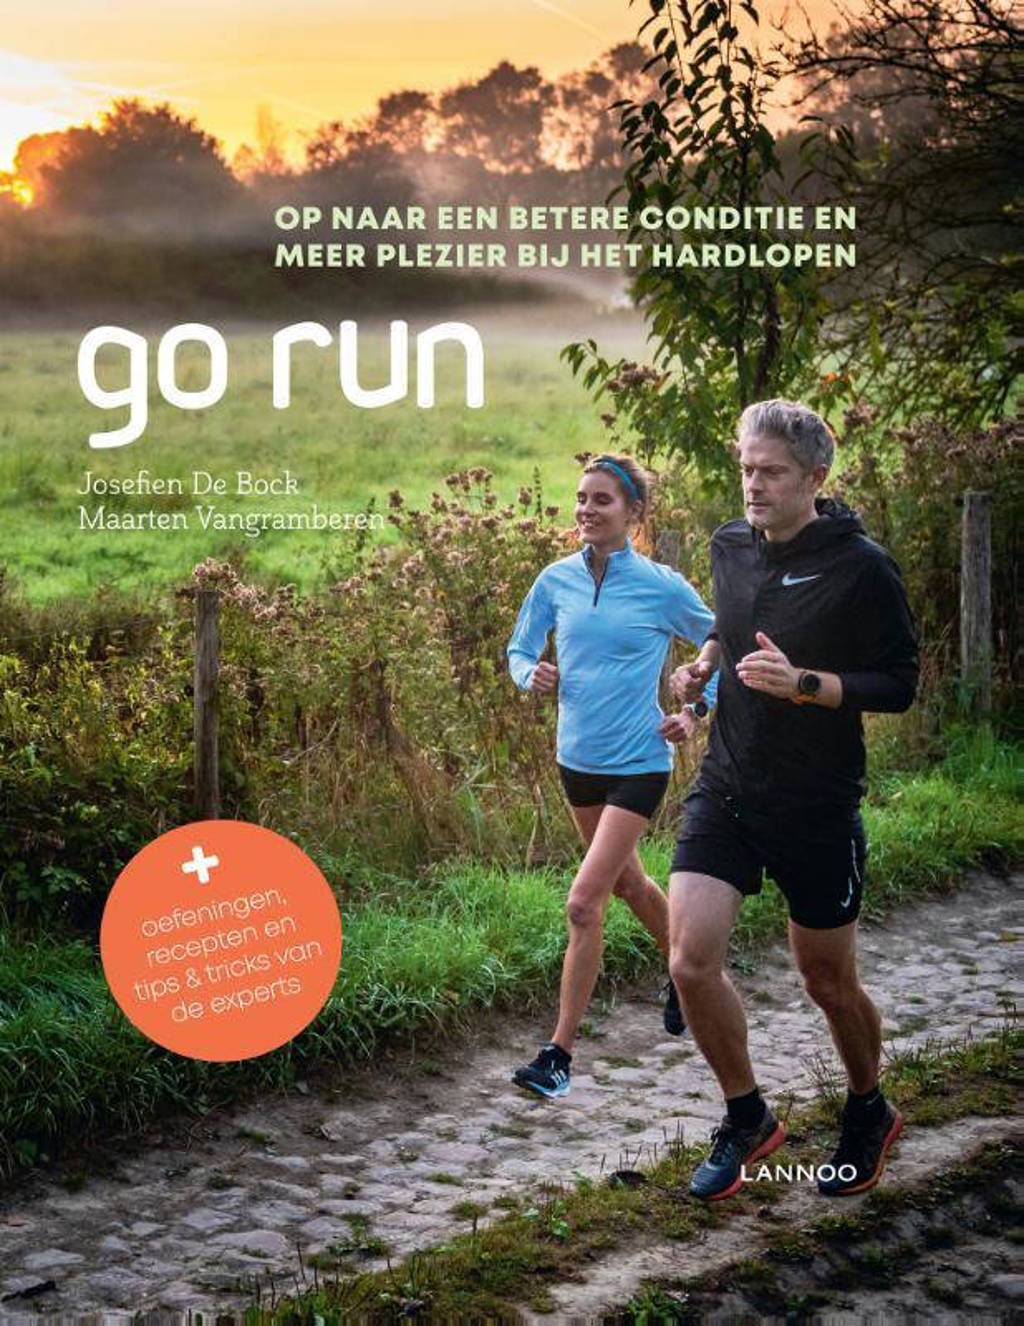 Go Run - Josefien De Bock en Maarten Vangramberen